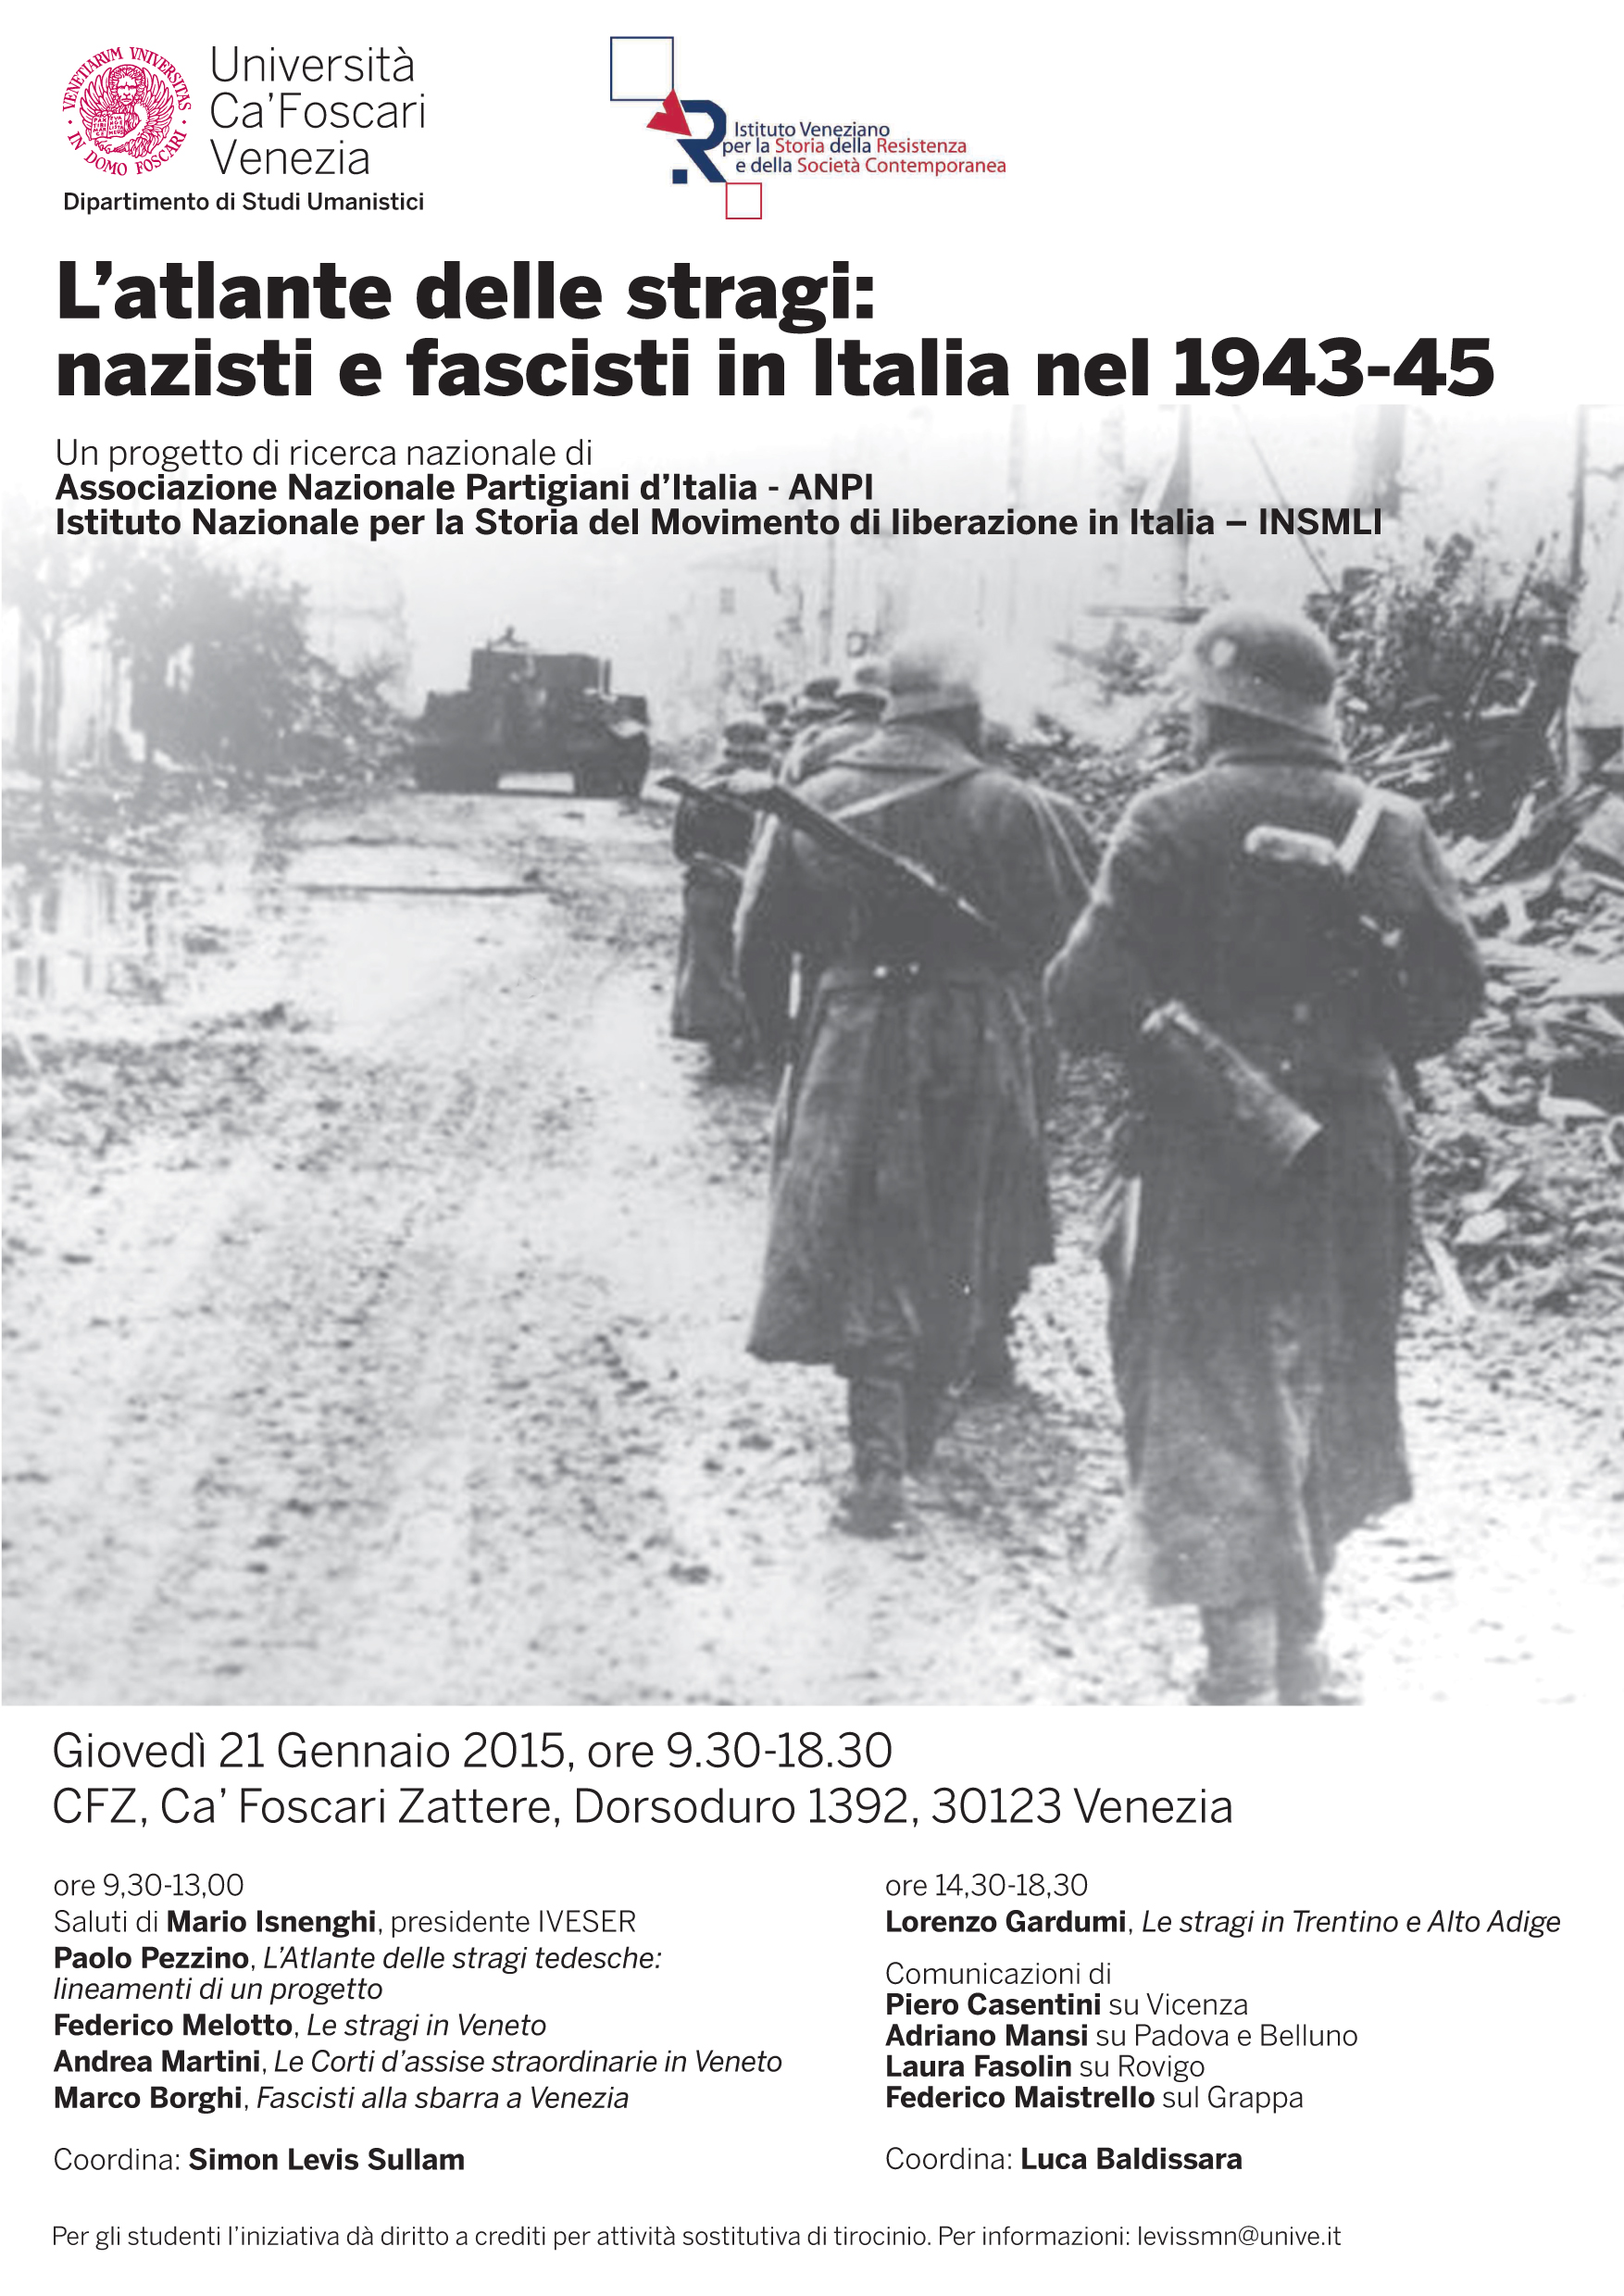 Nazisti e fascisti in Italia